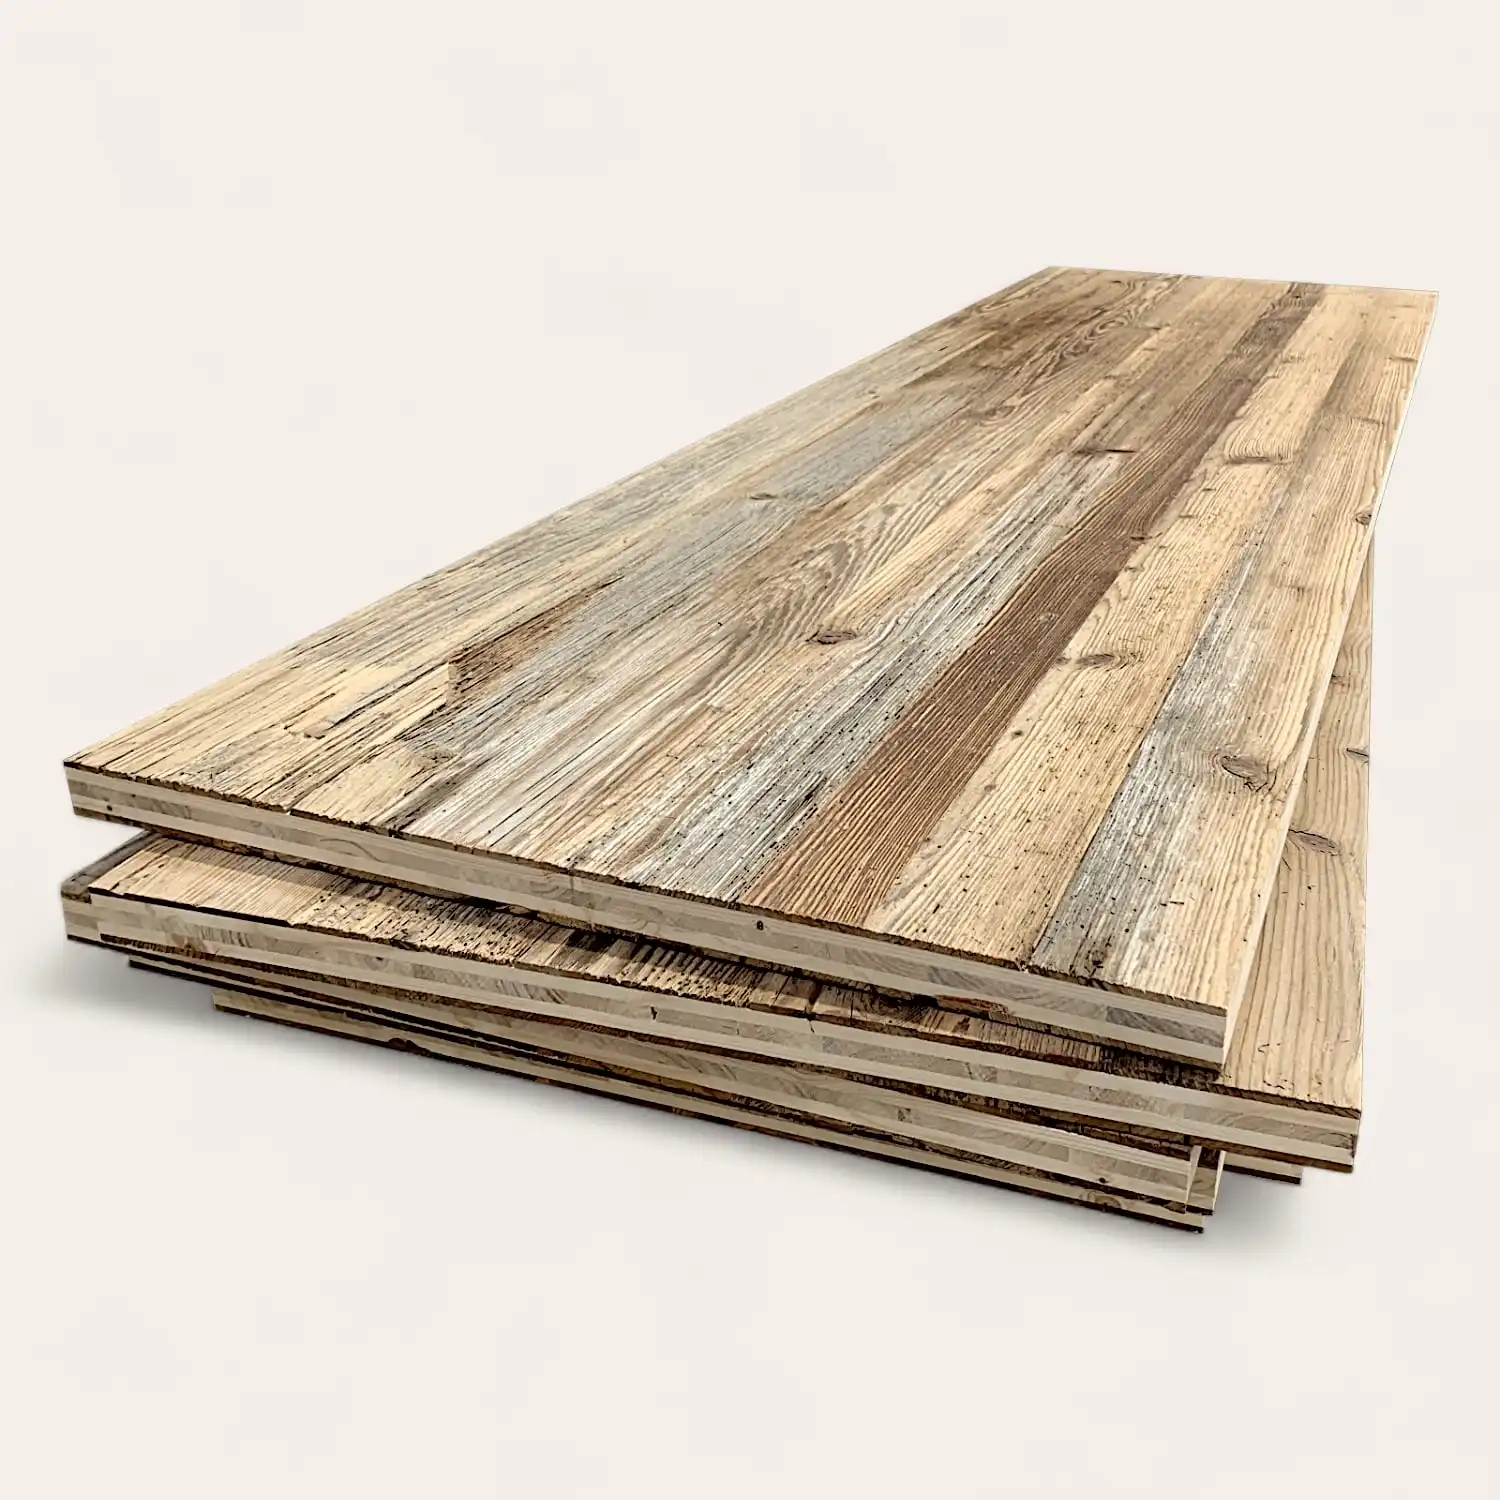  Pile de planches de bois patinées avec grain et texture visibles, sur un fond clair uni. 